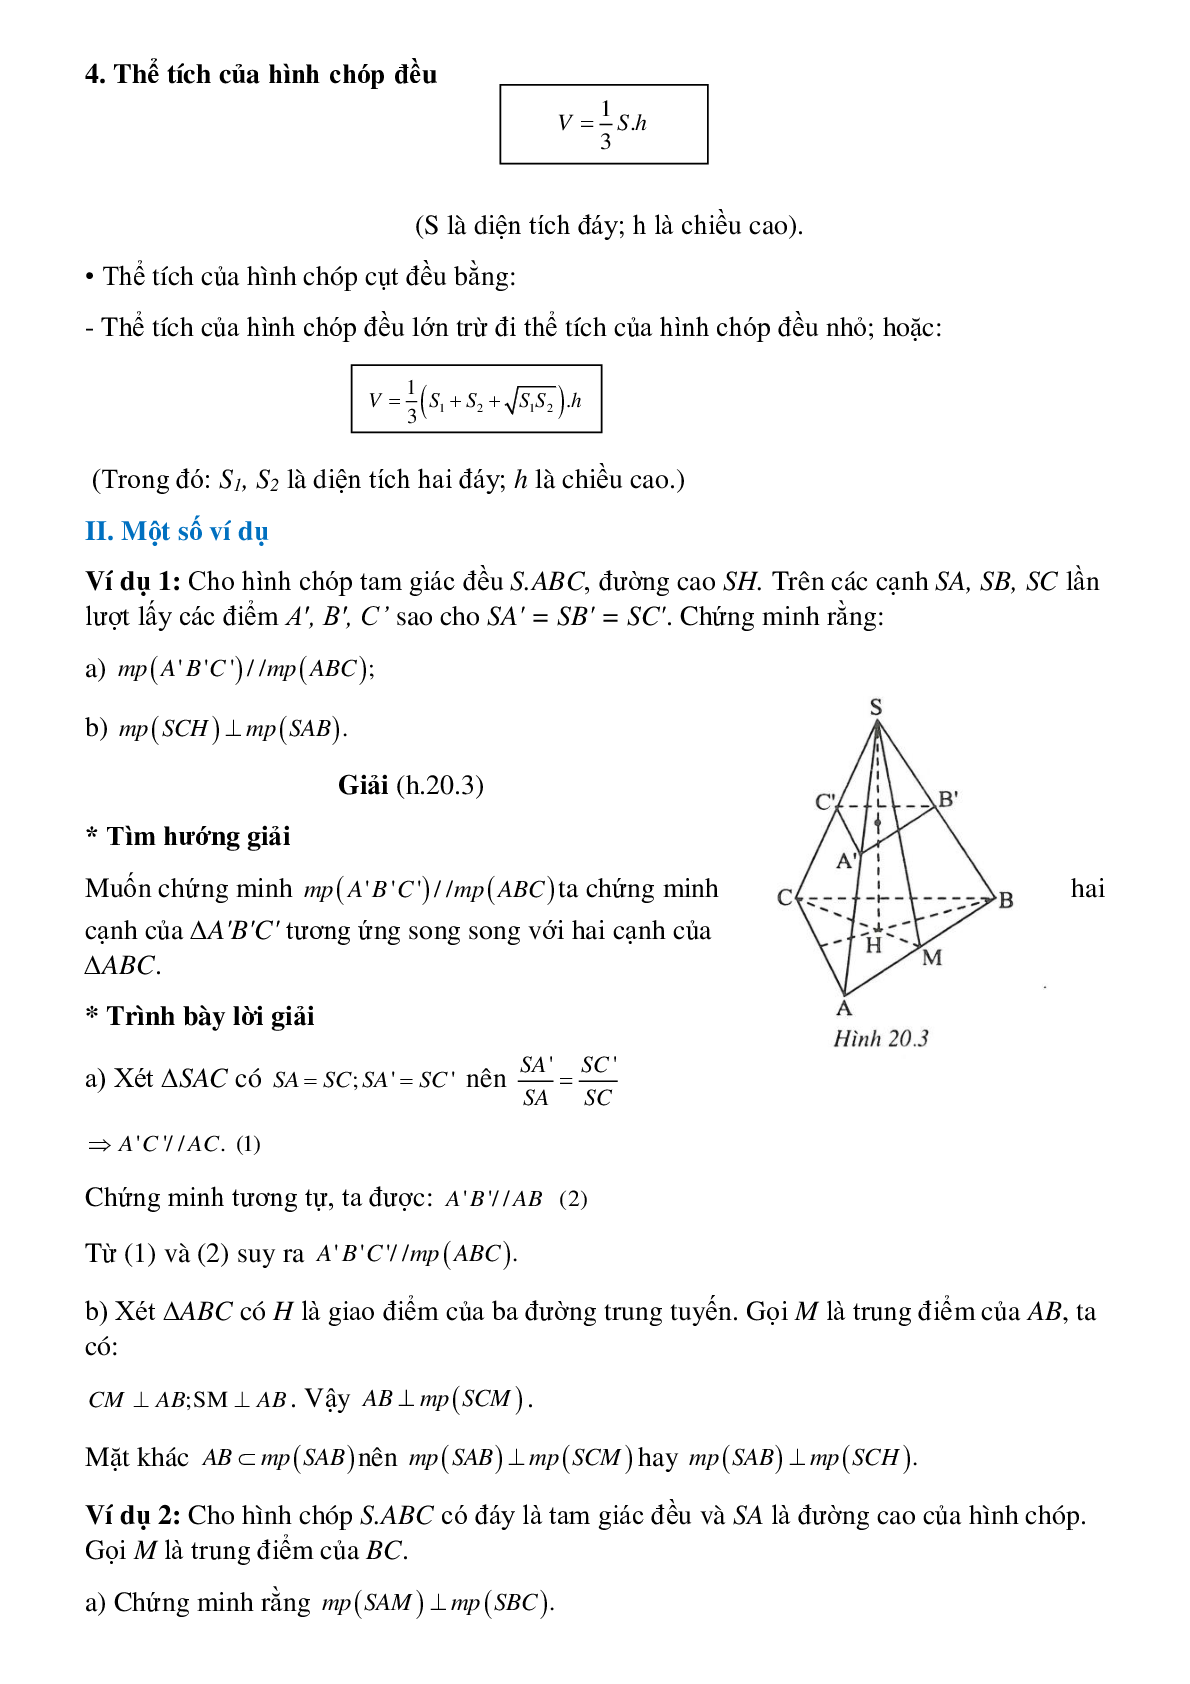 Hình chóp đều - Hình học toán 8 (trang 2)